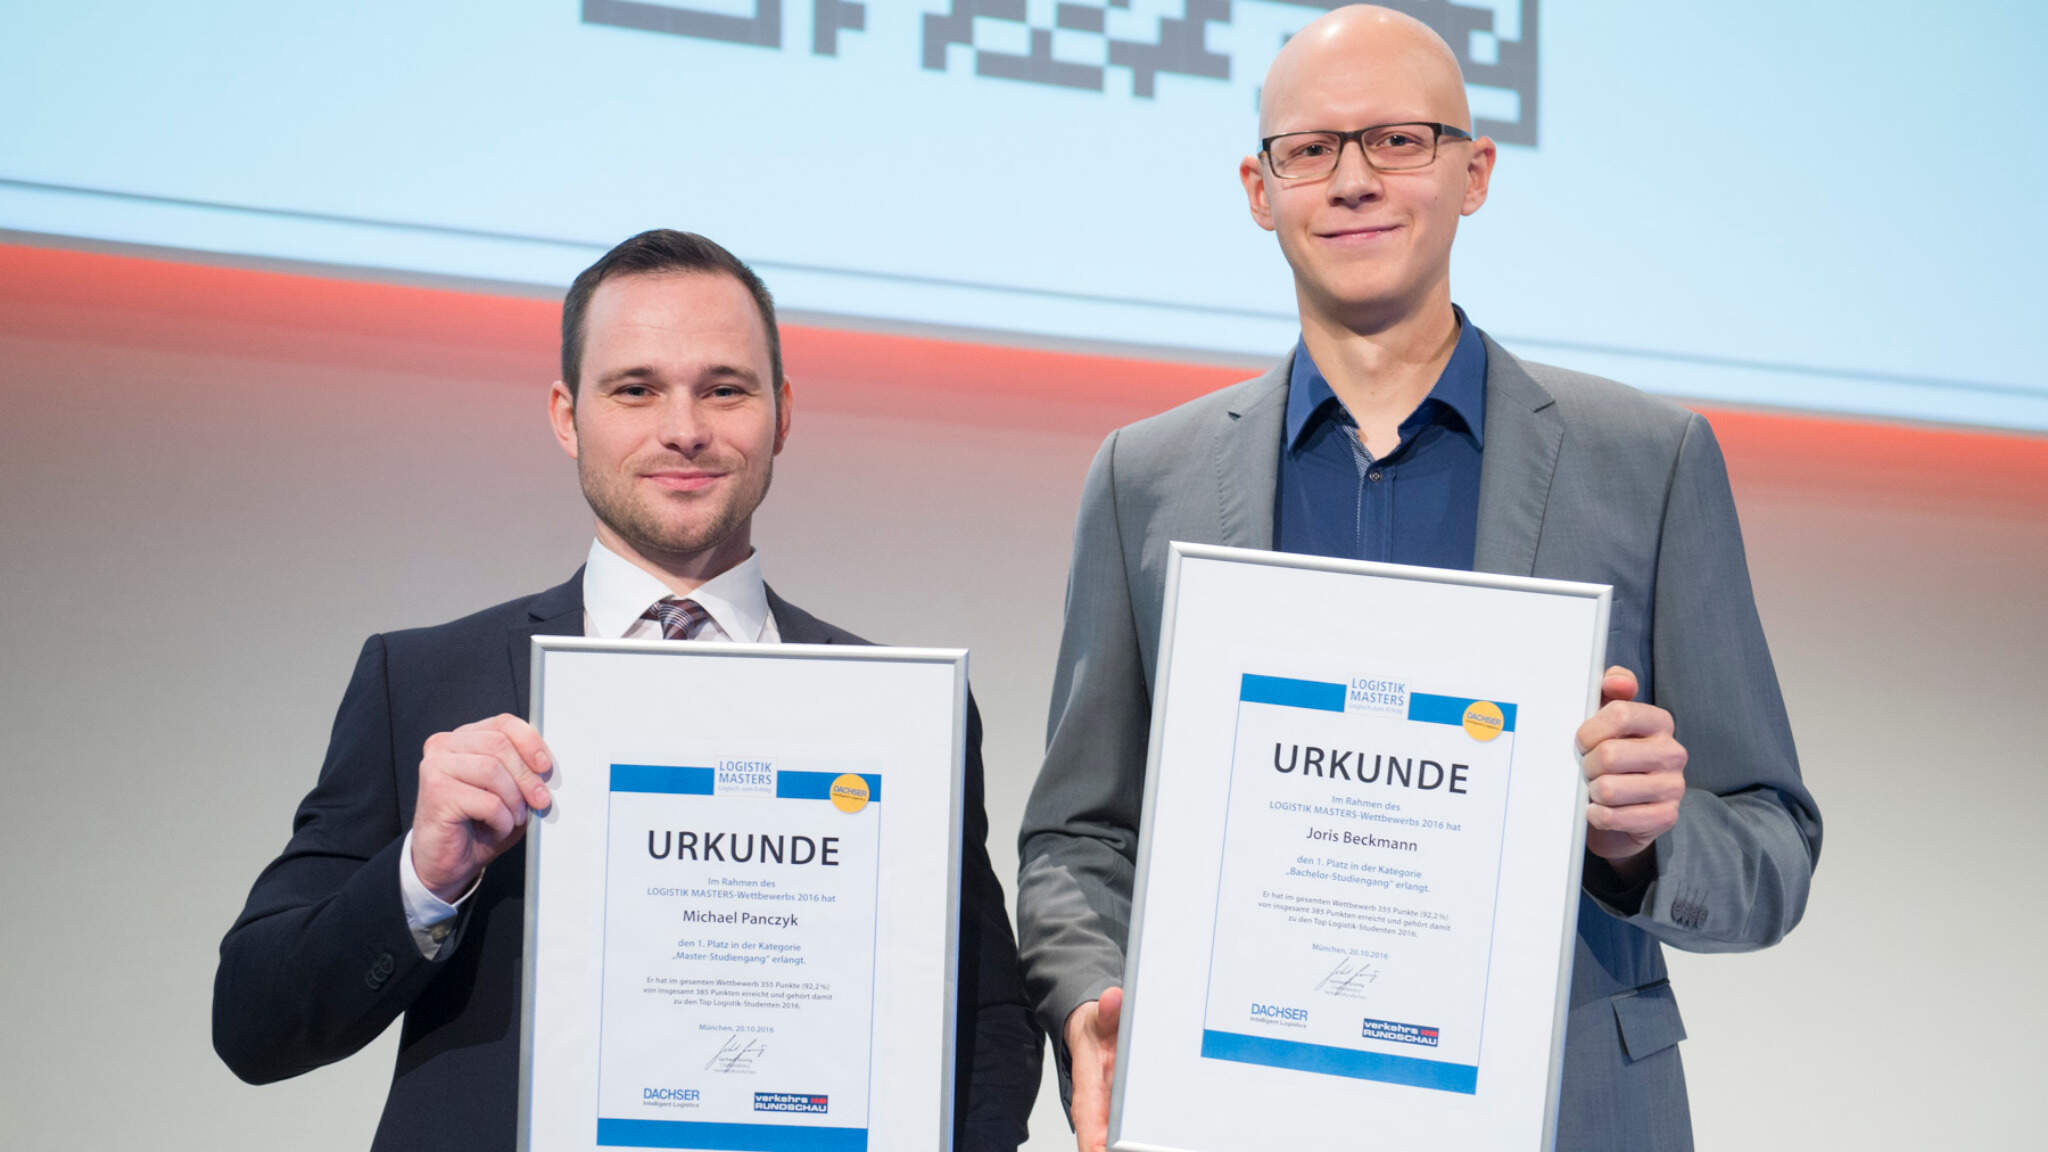 Michael Panczyk, Kategorie Master, TU Hamburg (links) und Joris Beckmann, Kategorie Bachelor, TU Braunschweig (rechts)